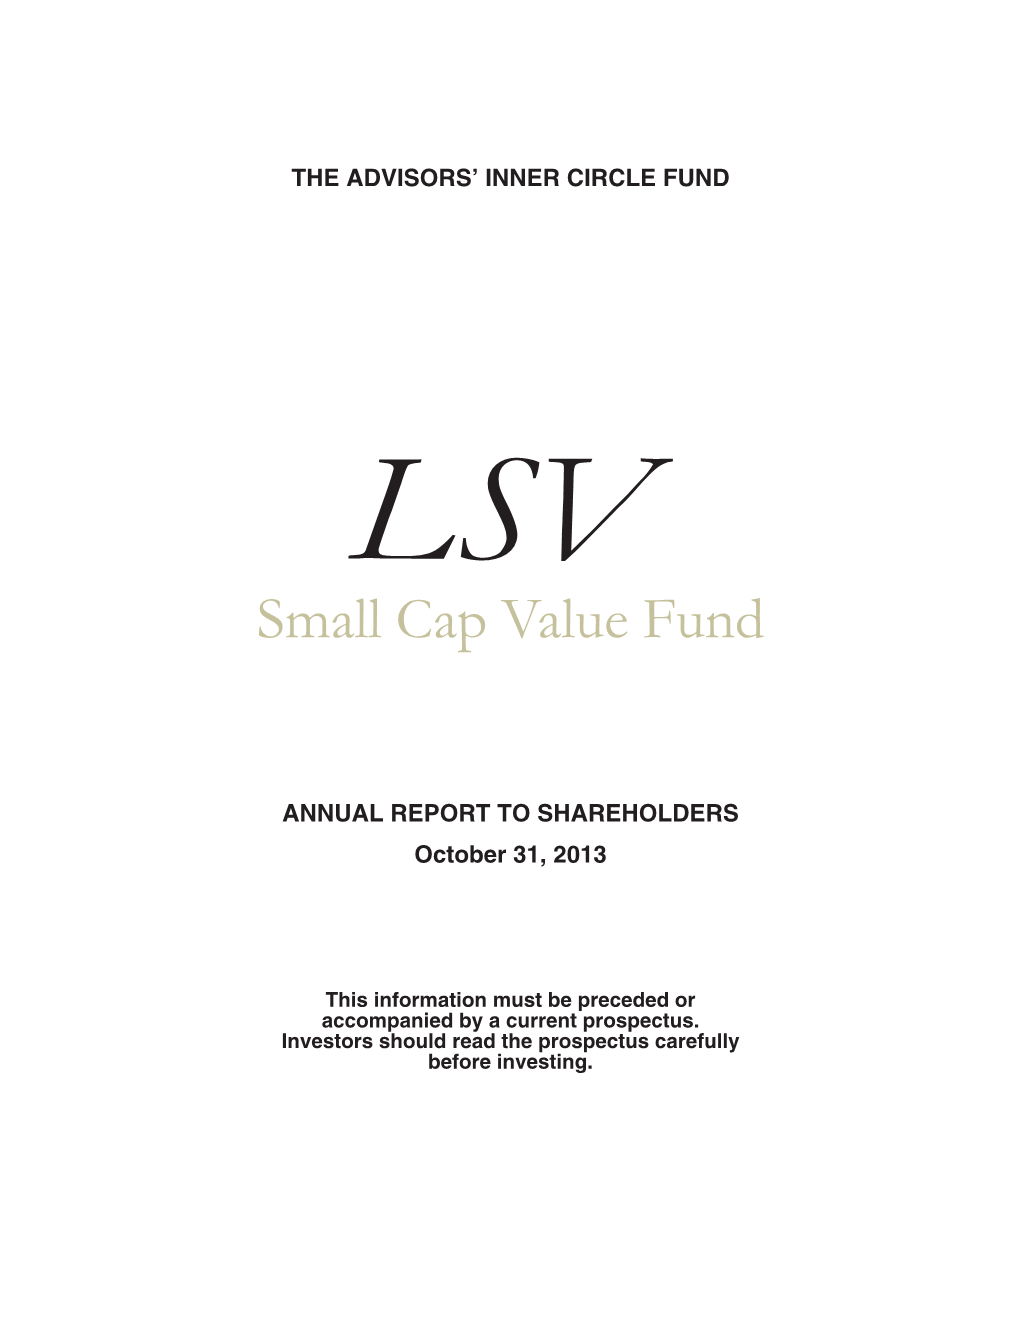 Small Cap Value Fund